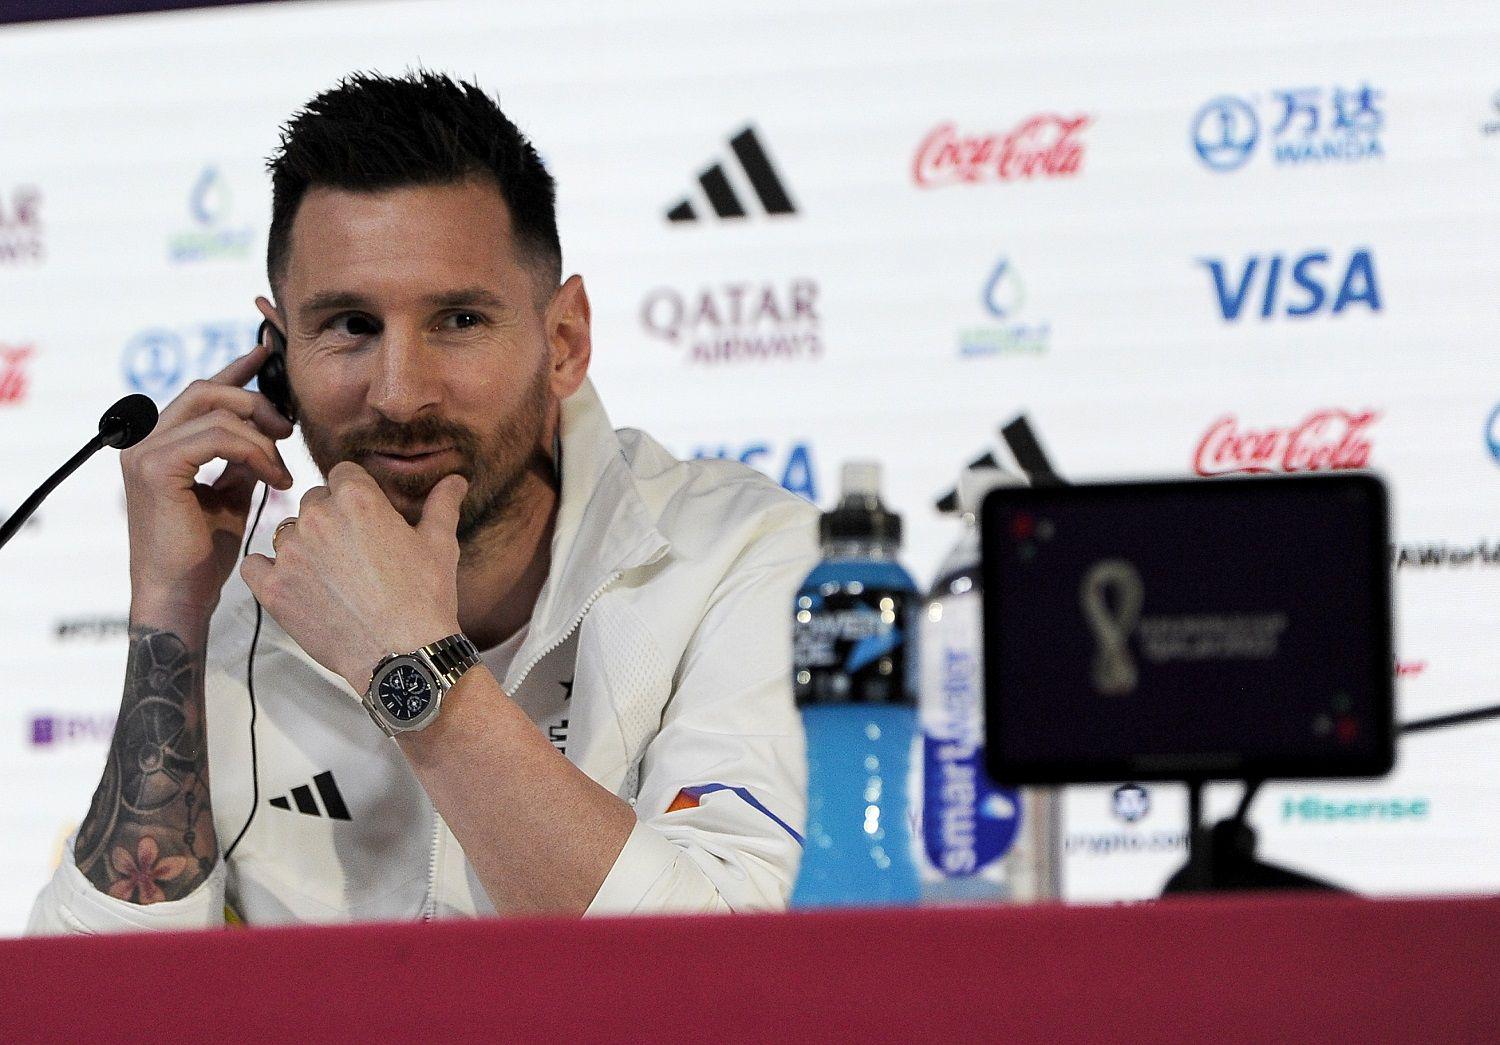 Lionel Messi publicoacute un mensaje en sus redes sociales antes del debut en Qatar